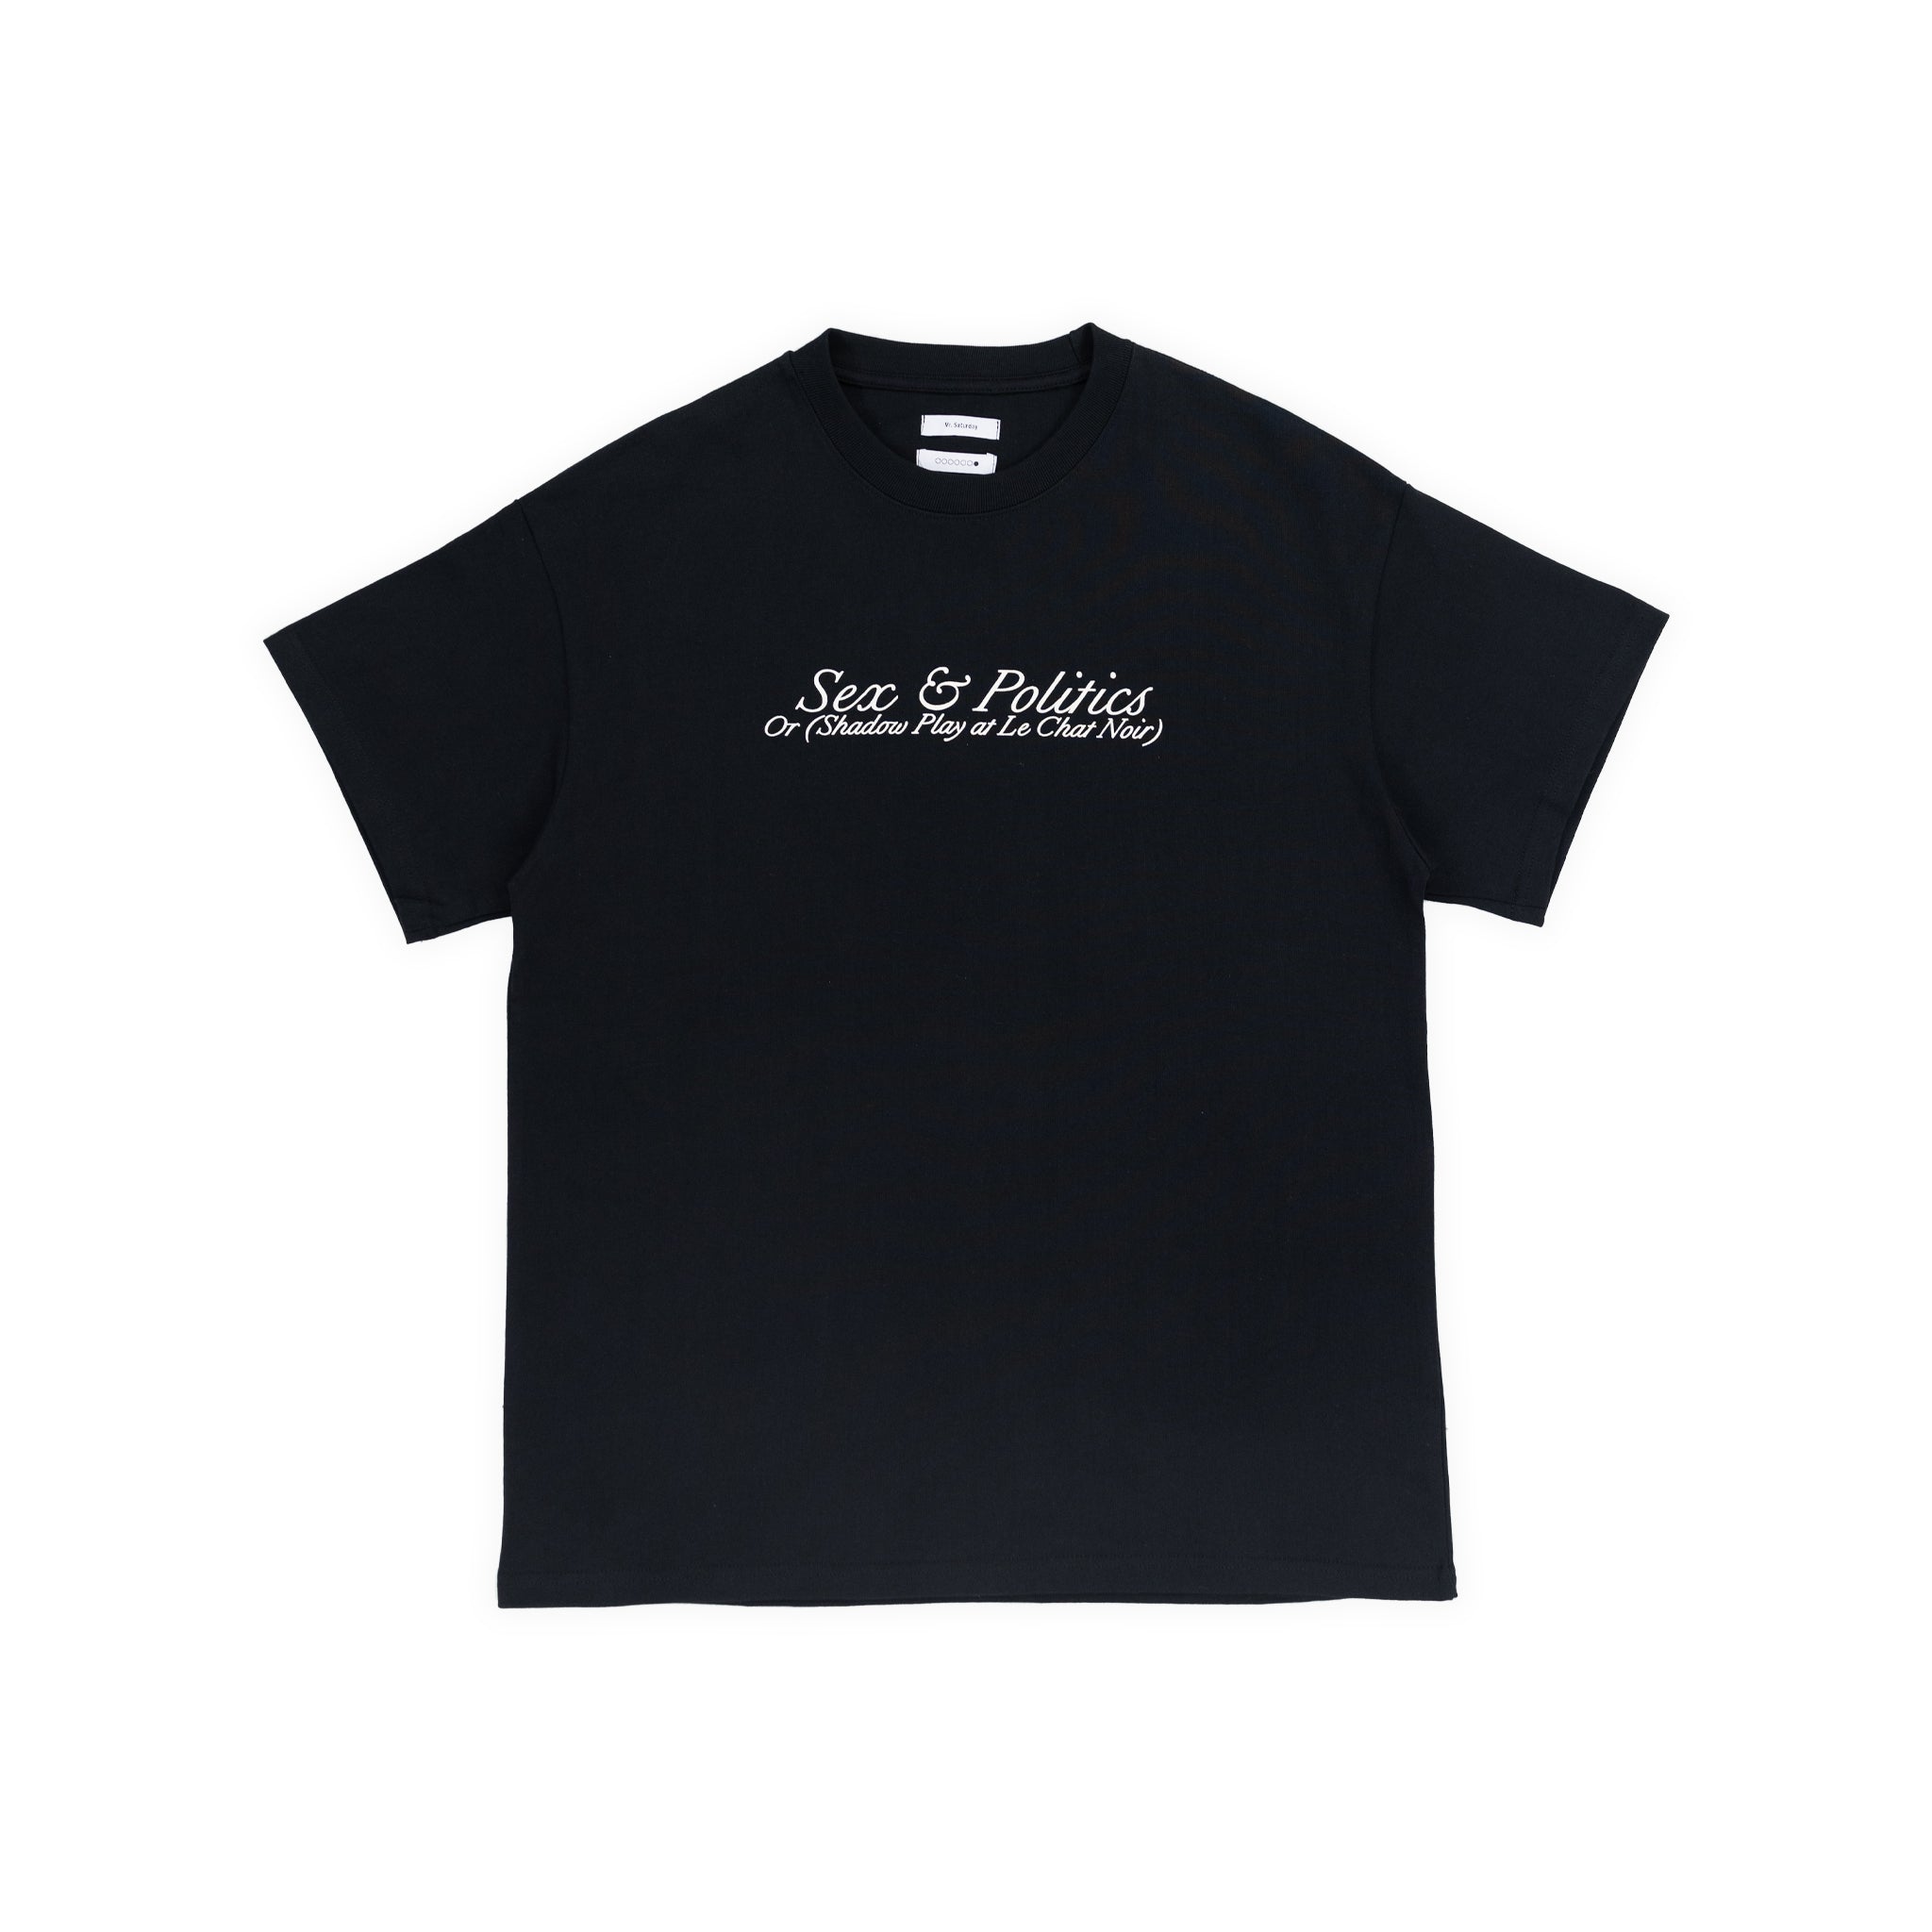 "S&P" T-shirt - Cotton (BLACK)